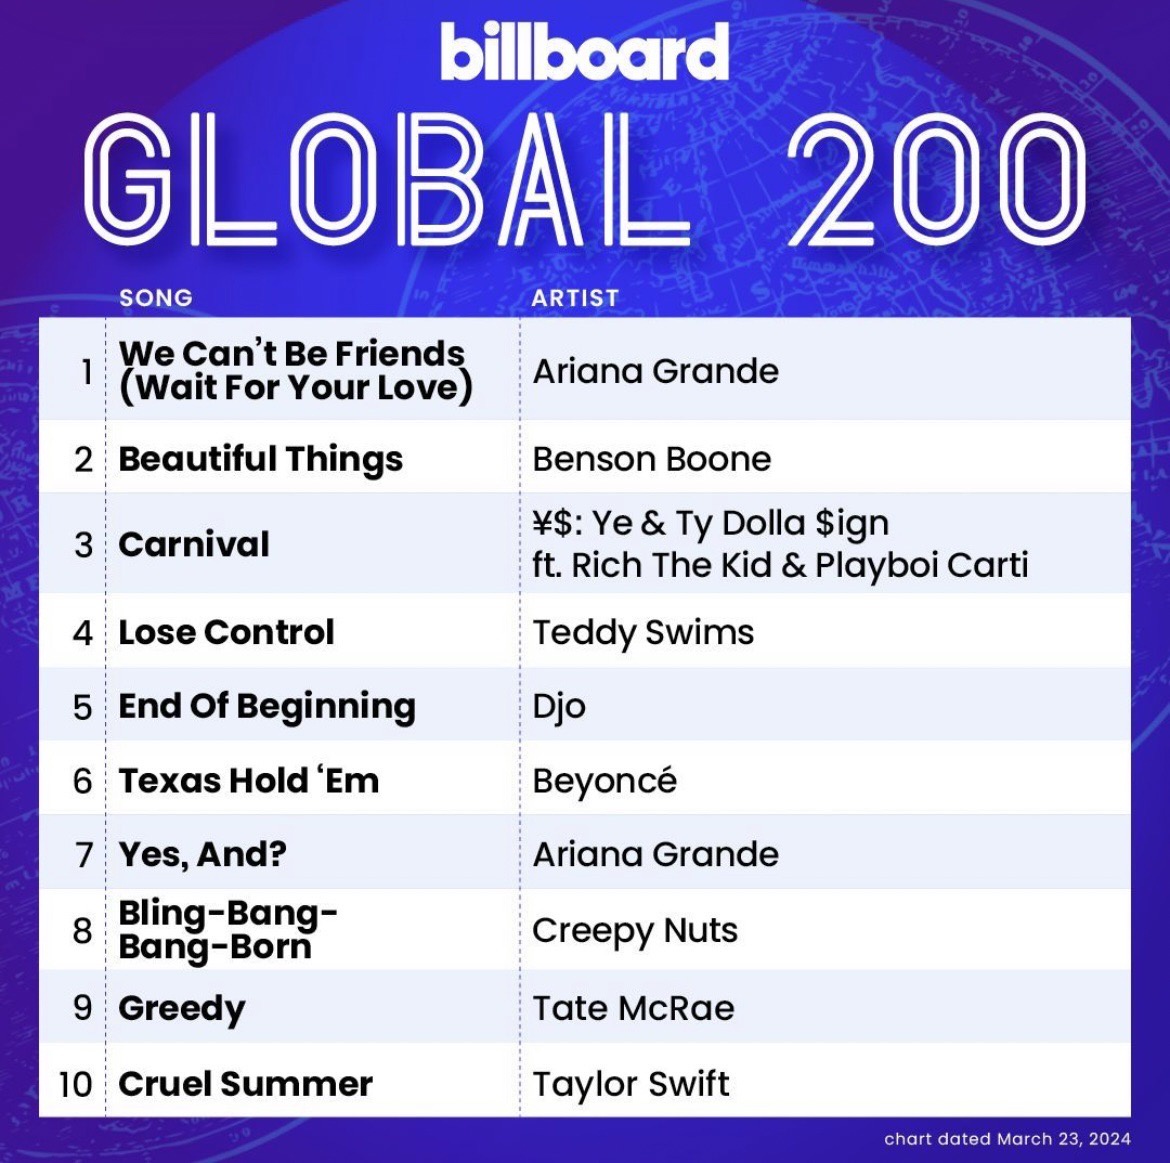 ฮอตไม่หยุด!! ซูเปอร์สตาร์สาว Ariana Grande ส่งแทร็กจากอัลบั้ม eternal sunshine ครองอันดับ 1 บนชาร์ต Billboard 200 และ Billboard Hot 100